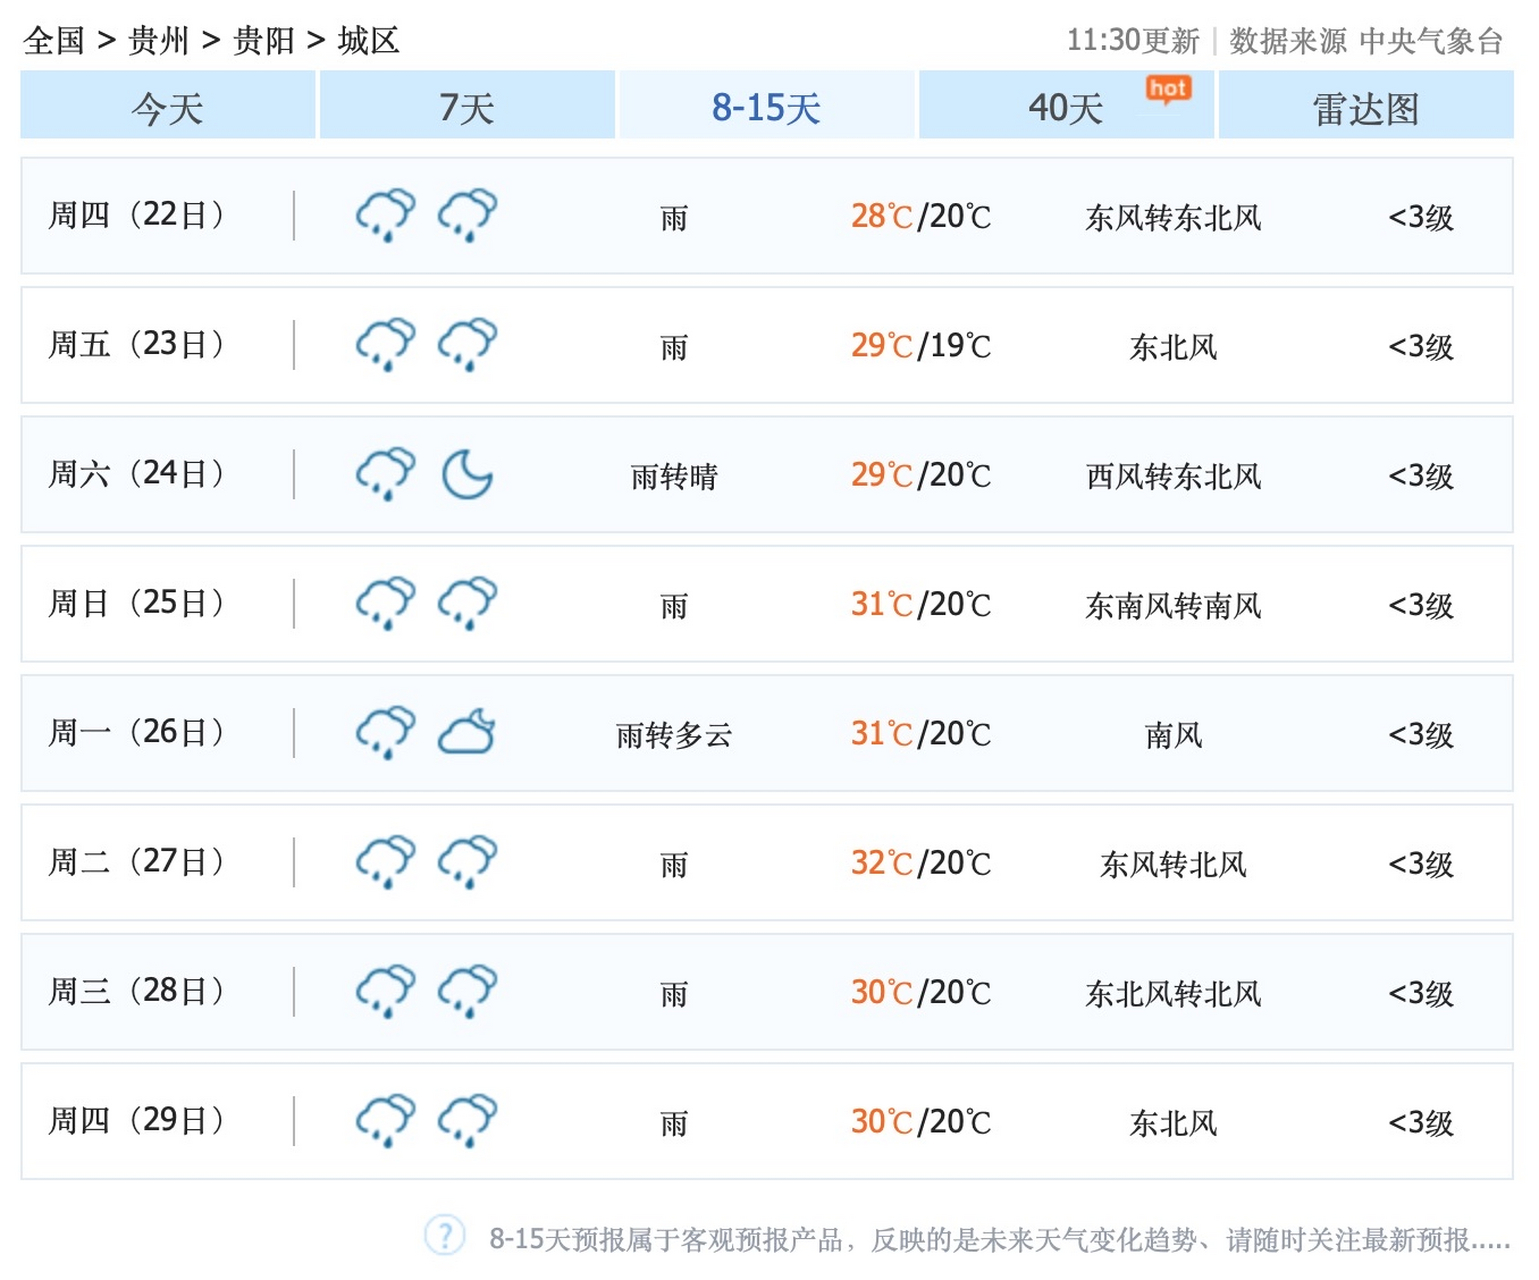 重庆天气预报15天气图片